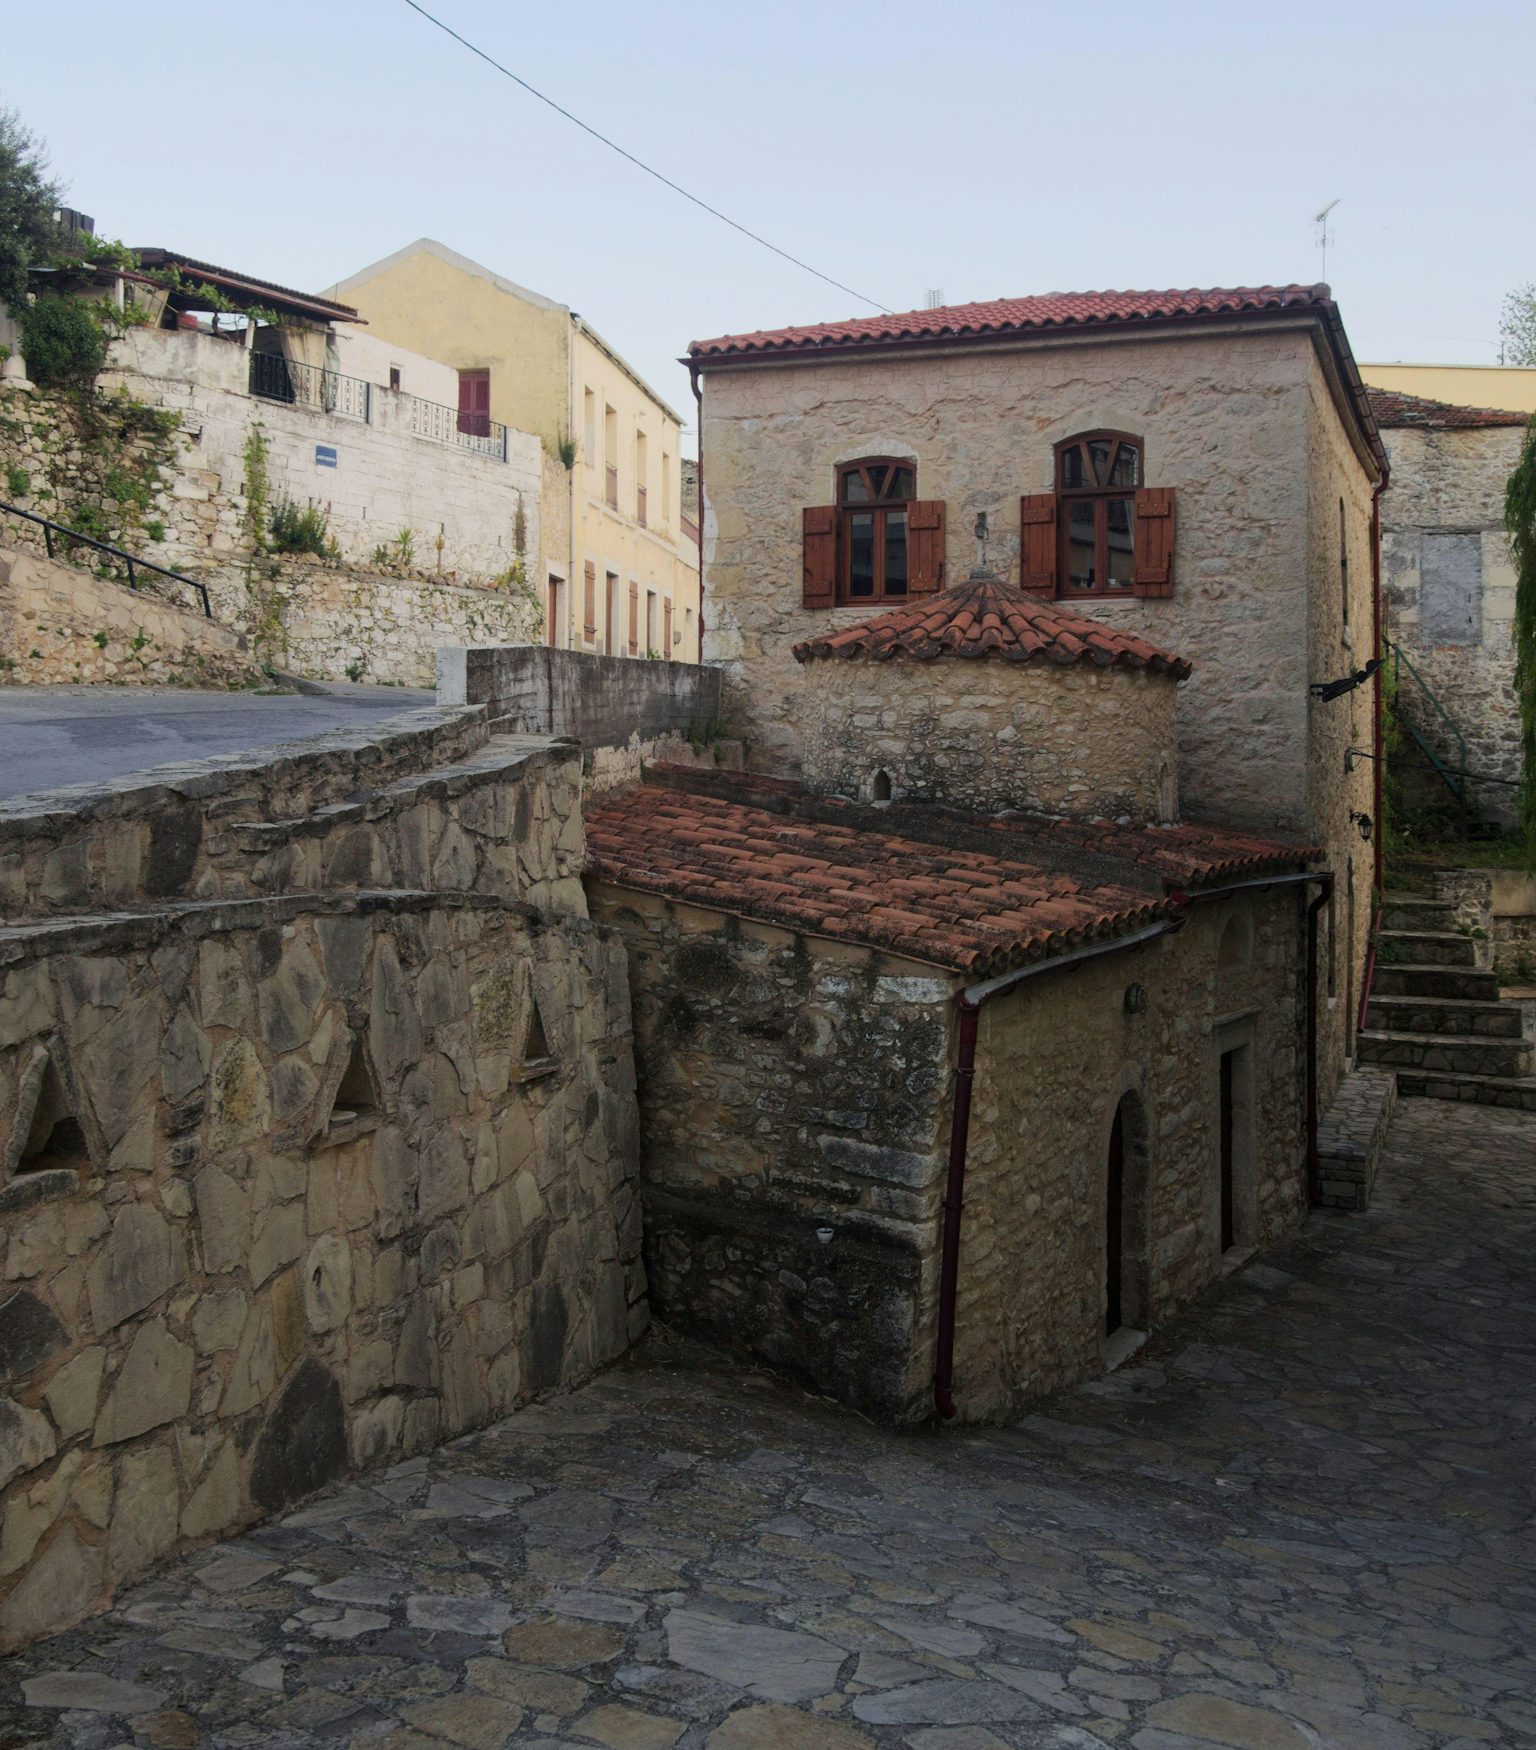 Σίβα, ένα γραφικό χωριό του Ηρακλείου